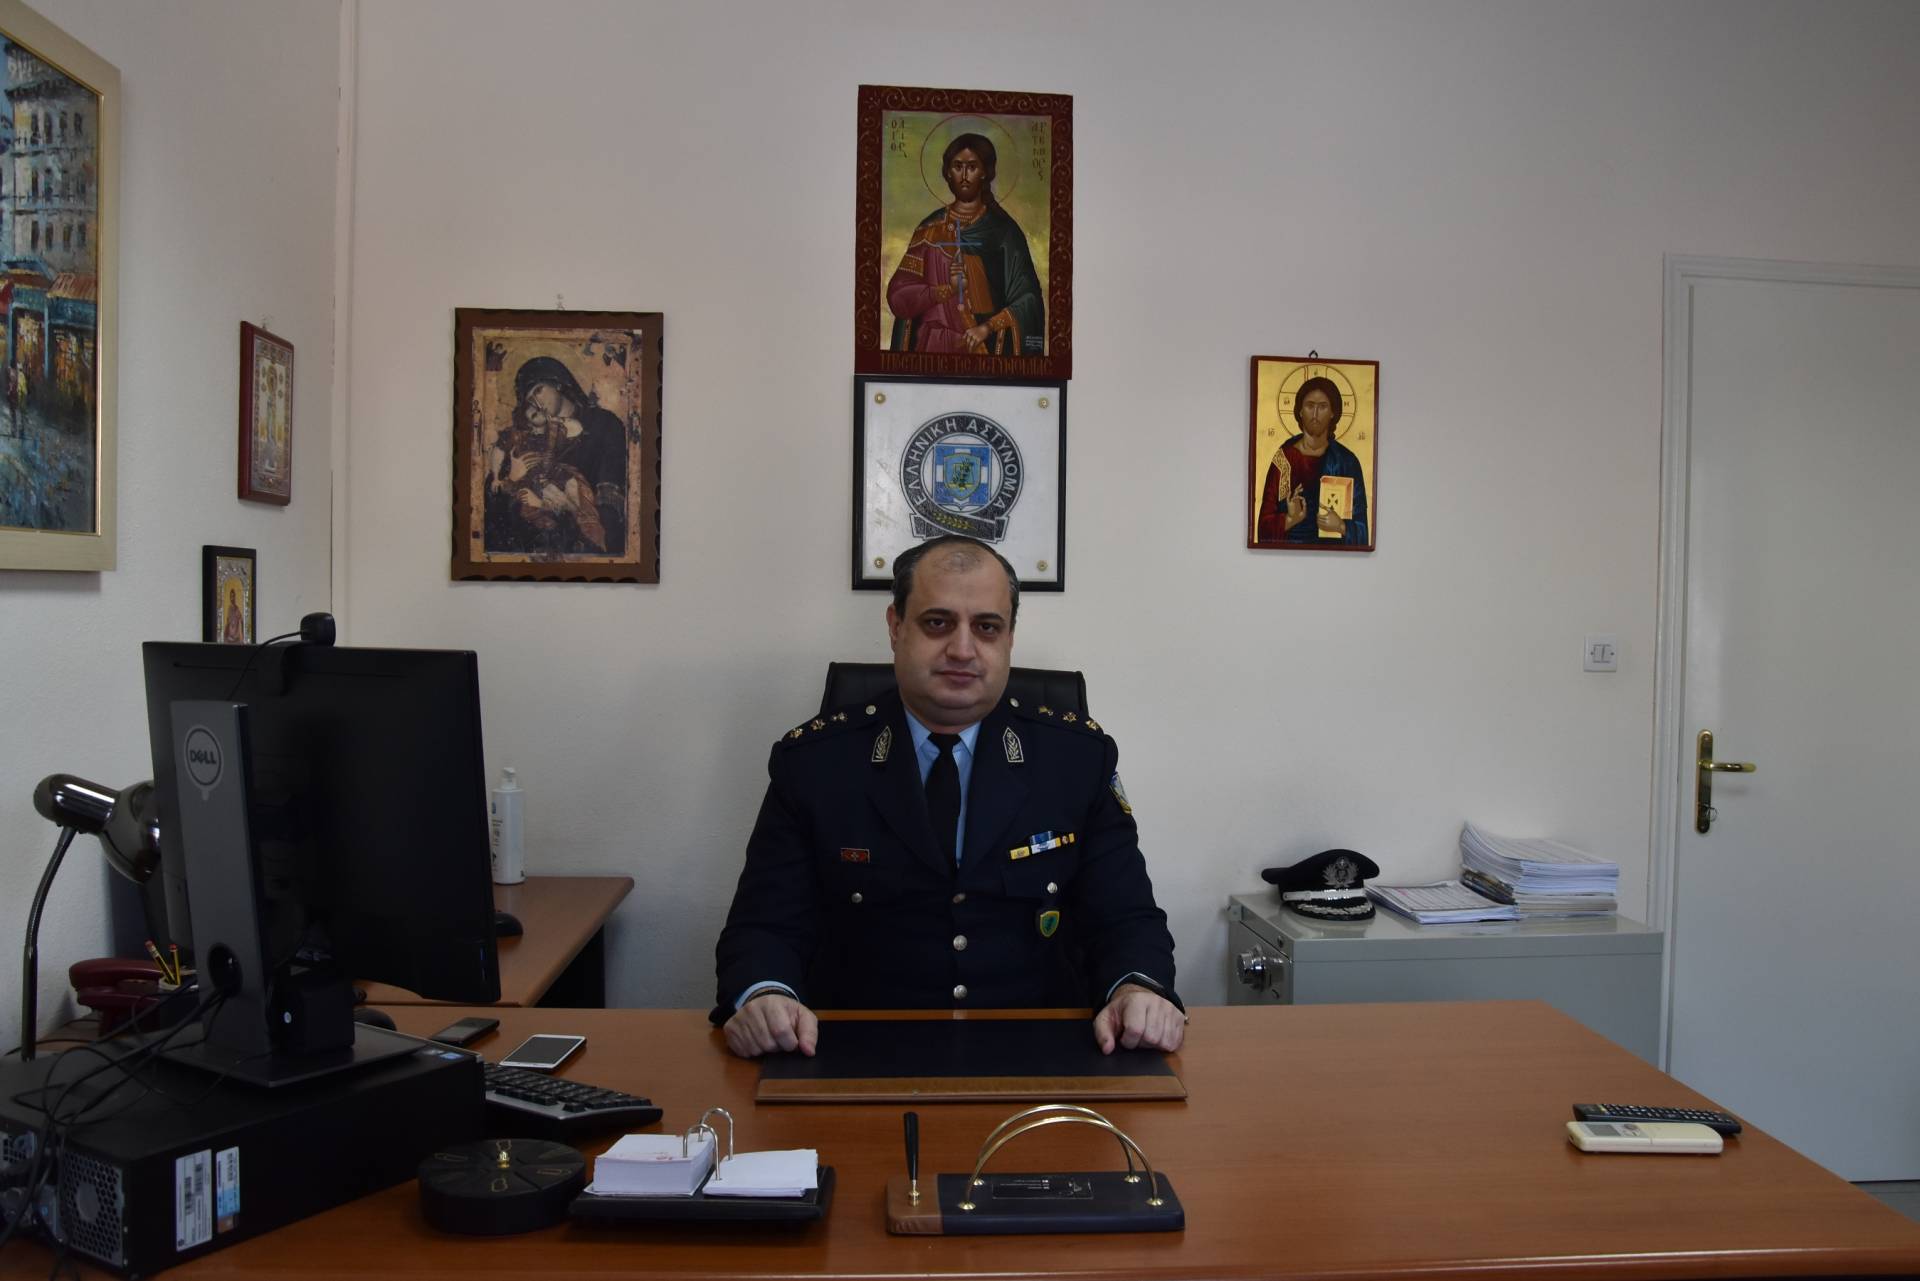 Ανέλαβε και εκτελεί καθήκοντα Διευθυντή της Διεύθυνσης Αστυνομίας Φλώρινας ο Αστυνομικός Υποδιευθυντής Παναγιώτης Γεωργιάδης